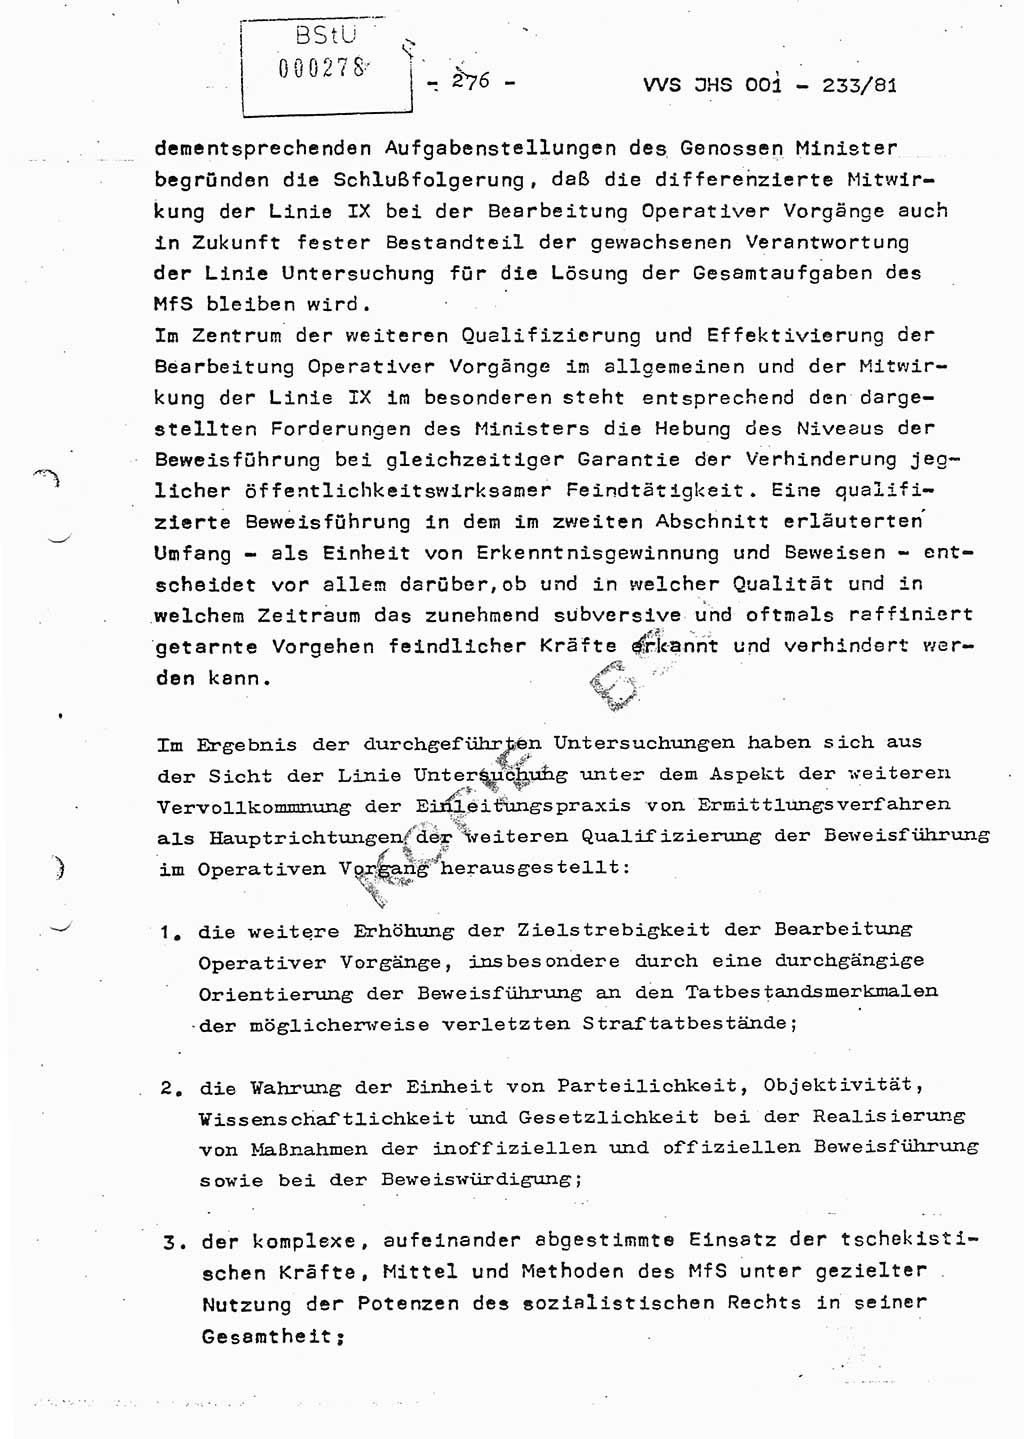 Dissertation Oberstleutnant Horst Zank (JHS), Oberstleutnant Dr. Karl-Heinz Knoblauch (JHS), Oberstleutnant Gustav-Adolf Kowalewski (HA Ⅸ), Oberstleutnant Wolfgang Plötner (HA Ⅸ), Ministerium für Staatssicherheit (MfS) [Deutsche Demokratische Republik (DDR)], Juristische Hochschule (JHS), Vertrauliche Verschlußsache (VVS) o001-233/81, Potsdam 1981, Blatt 276 (Diss. MfS DDR JHS VVS o001-233/81 1981, Bl. 276)